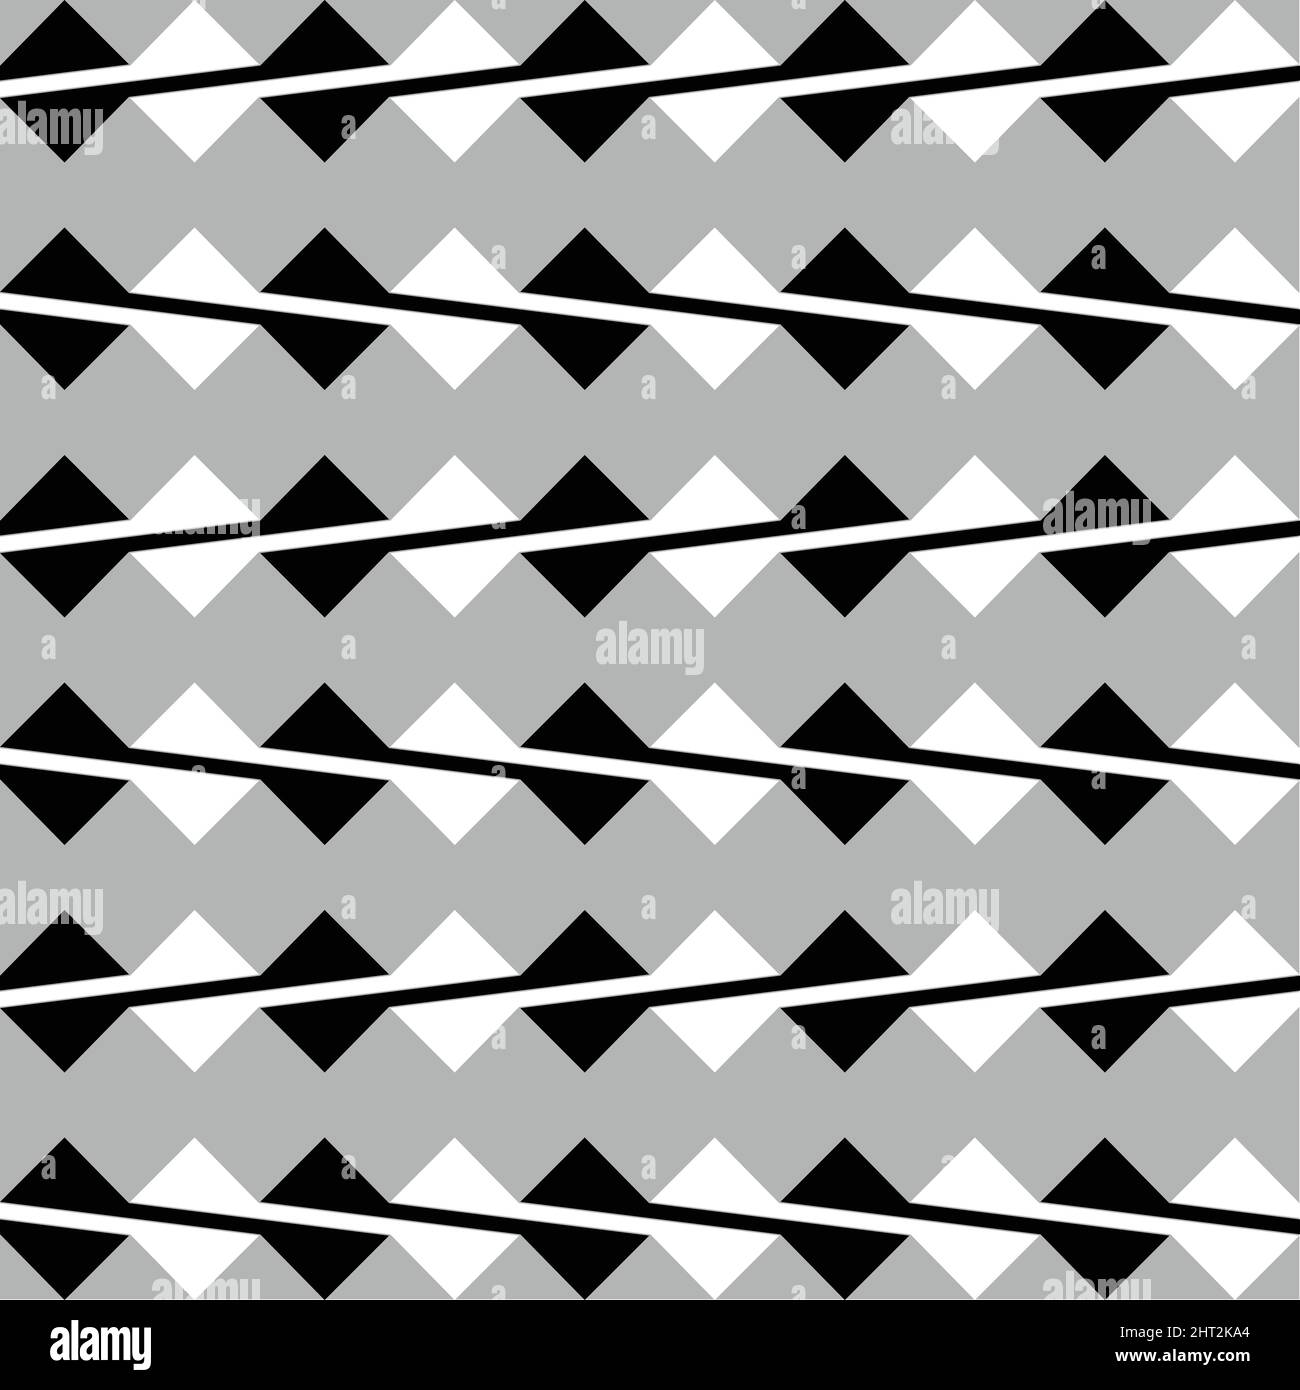 Illusion carrée, motif géométrique d'illusion optique. Illustration vectorielle Illustration de Vecteur